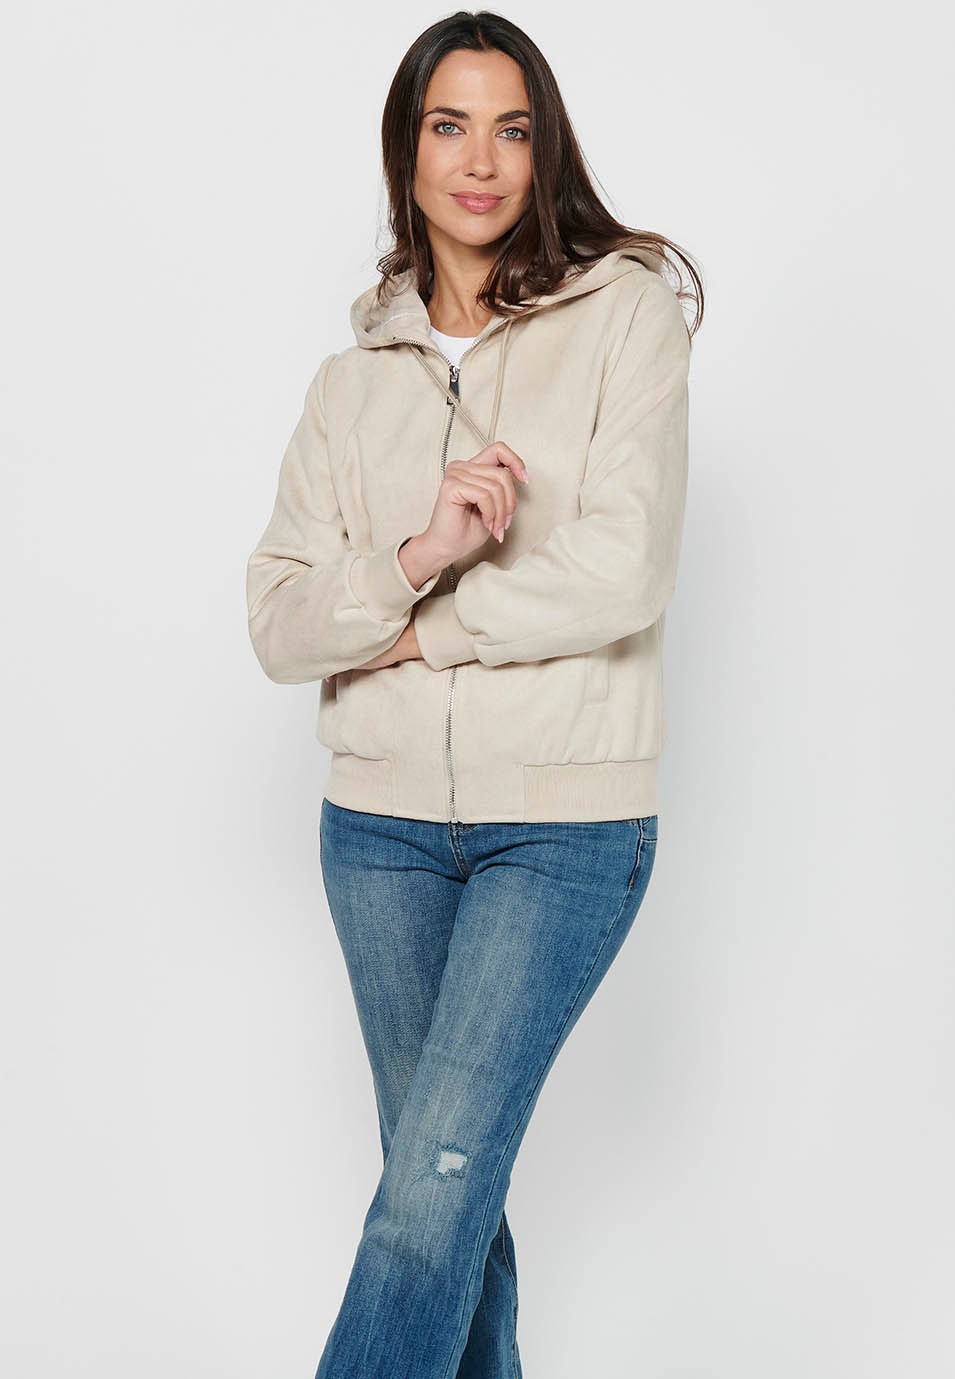 Women's Ecru Color Hooded Collar Long Sleeve Zip Front Closure Sweatshirt Jacket 9